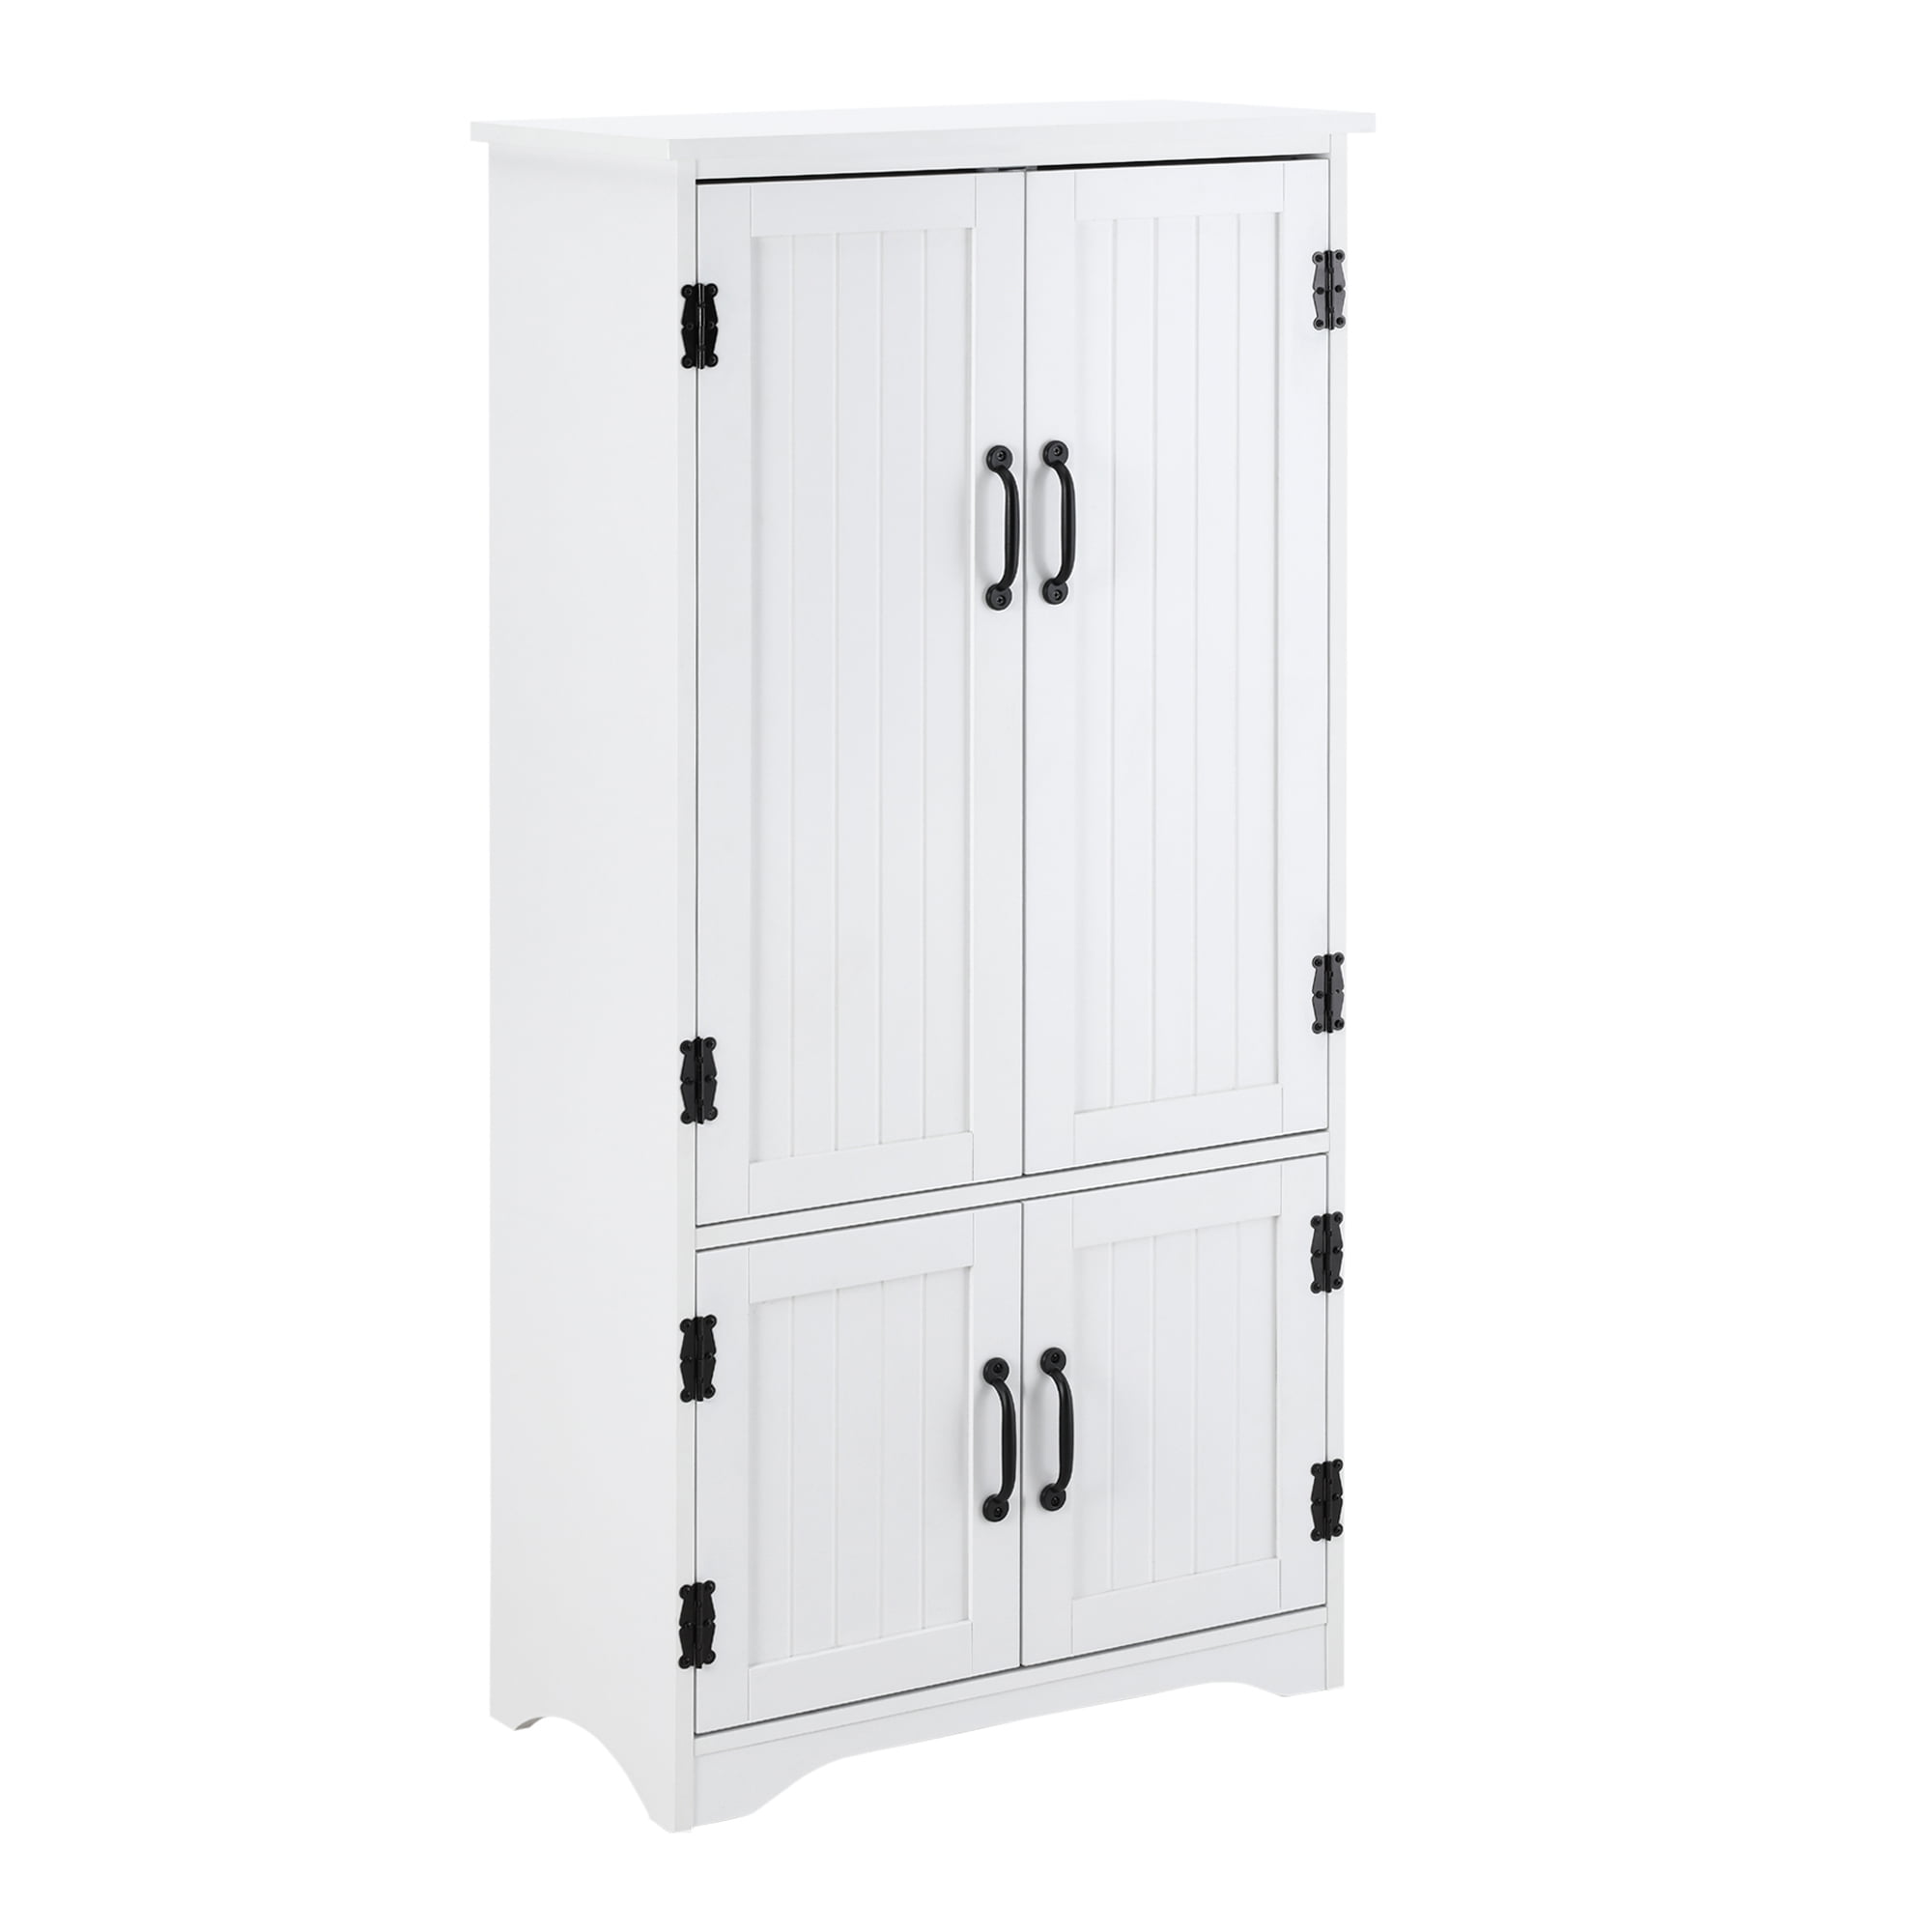 HOMCOM Kitchen Pantry Cupboard Wooden Storage Cabinet Organizer Shelf White 